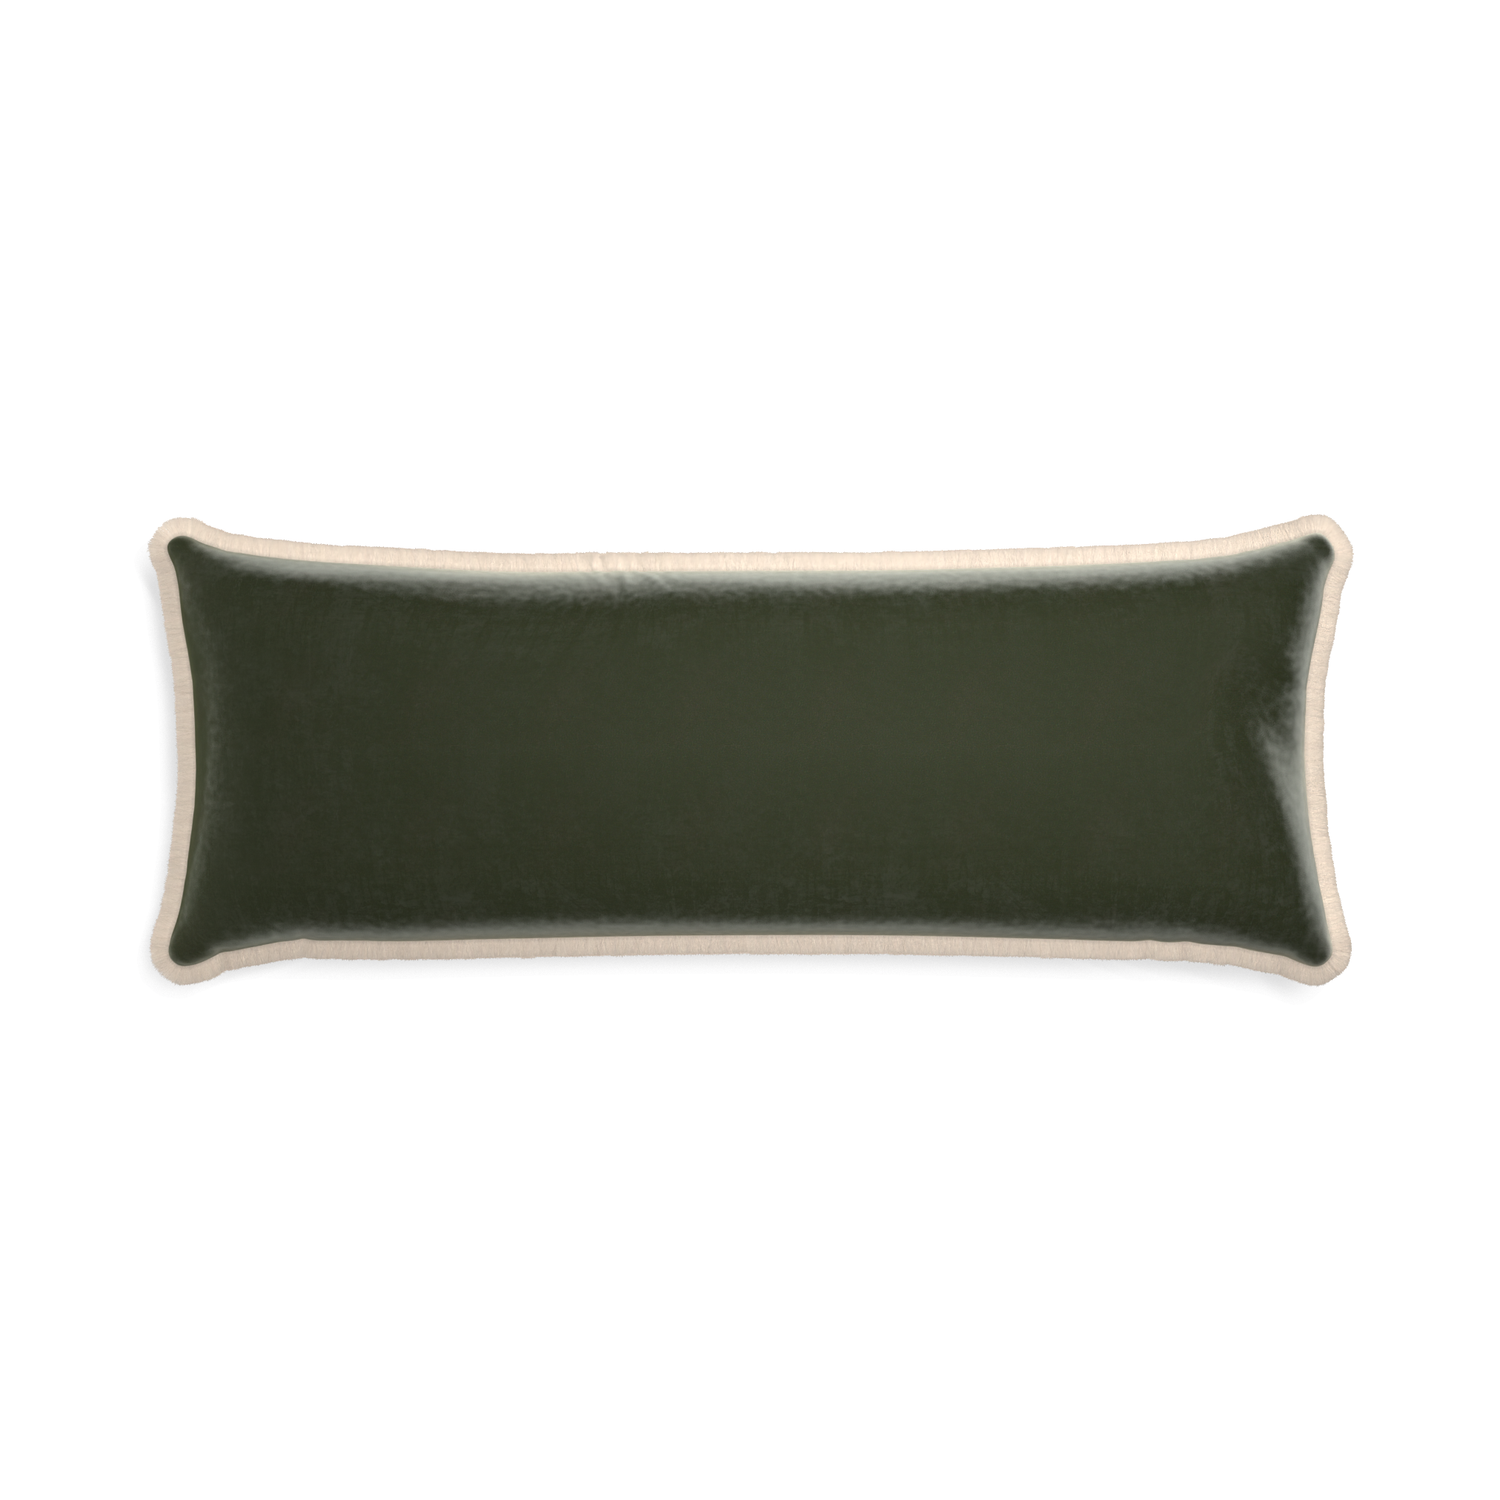 rectangle fern green velvet pillow with cream fringe